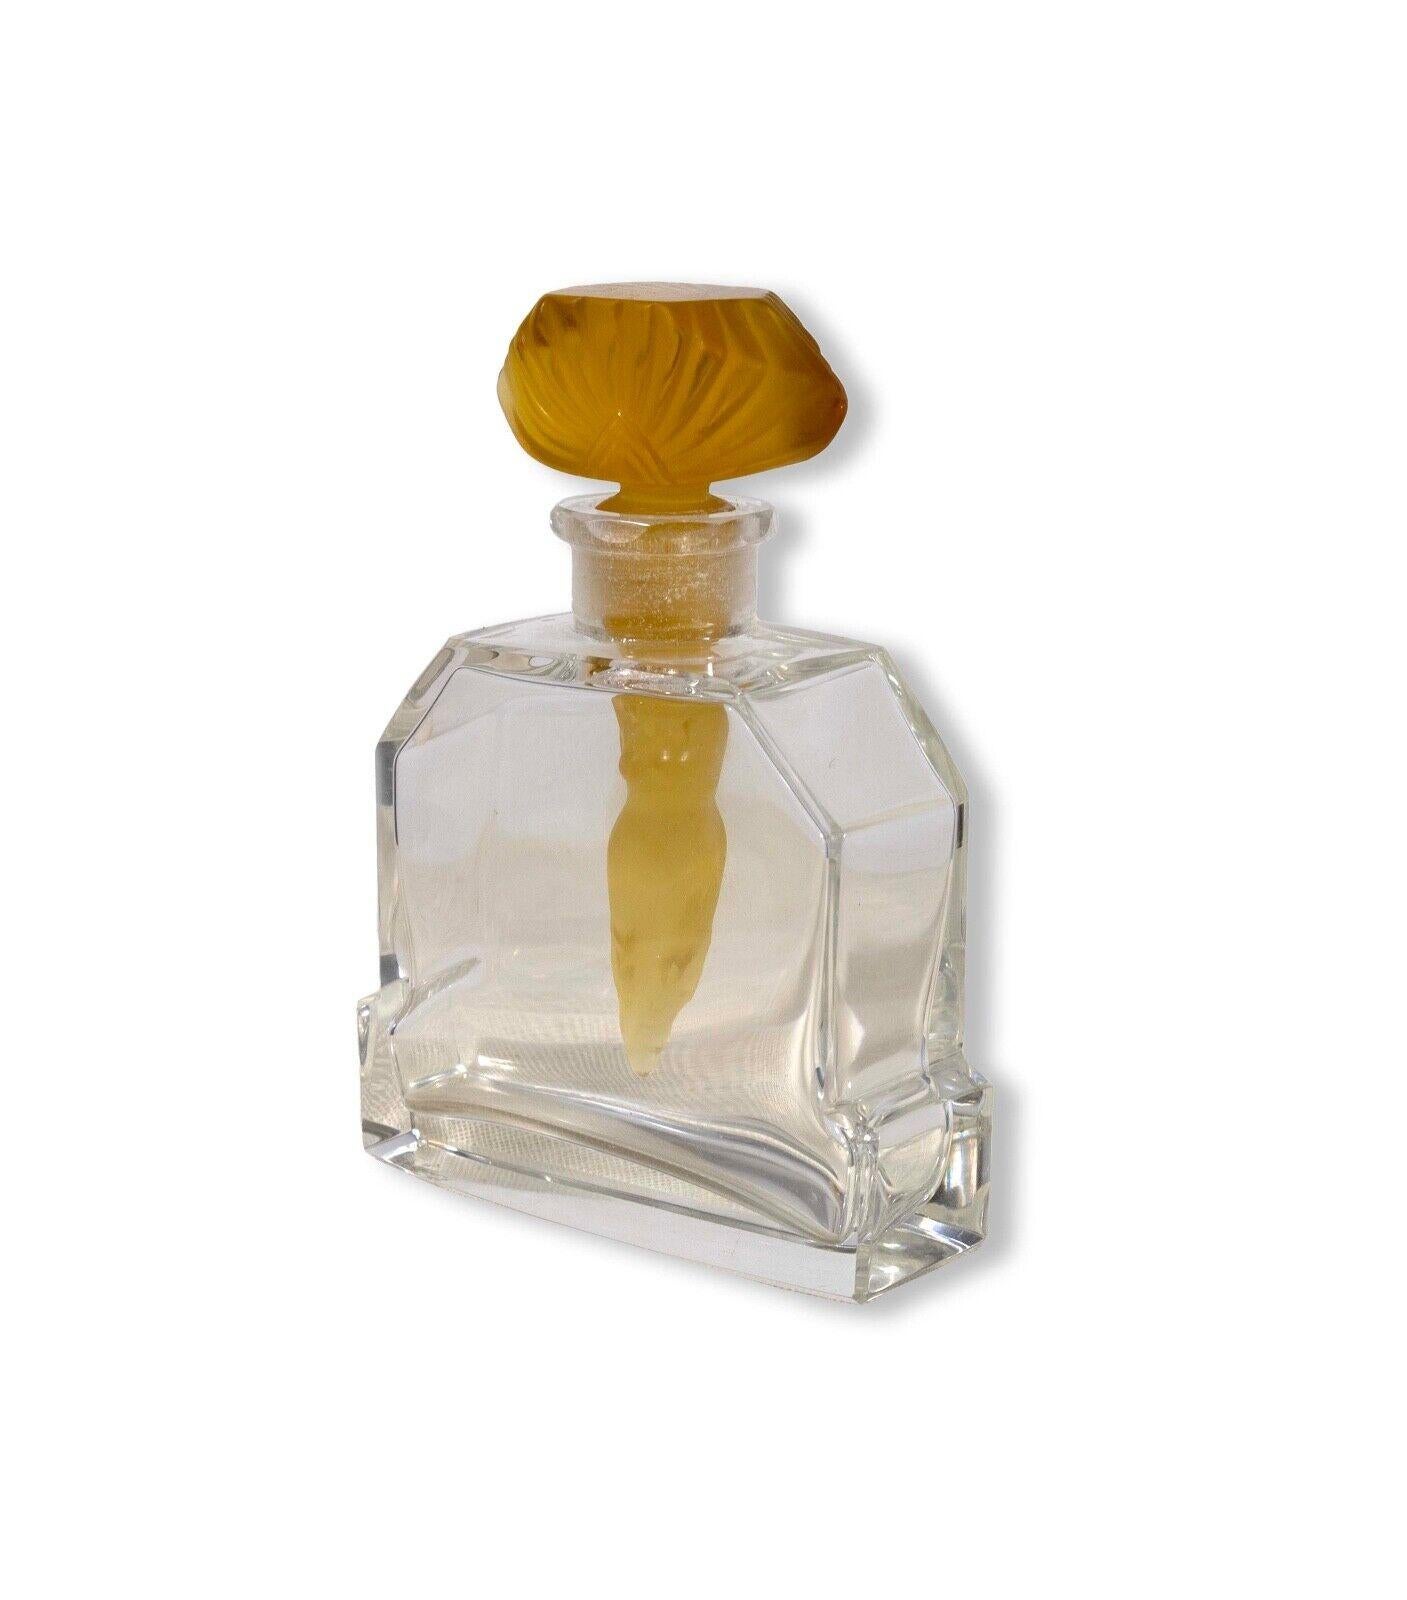 Un superbe flacon de parfum en verre Art déco réalisé par l'artiste bohémien Heinrich Hoffman en 1926. Un corps cristallin de forme facettée. Un bouchon en or avec un 